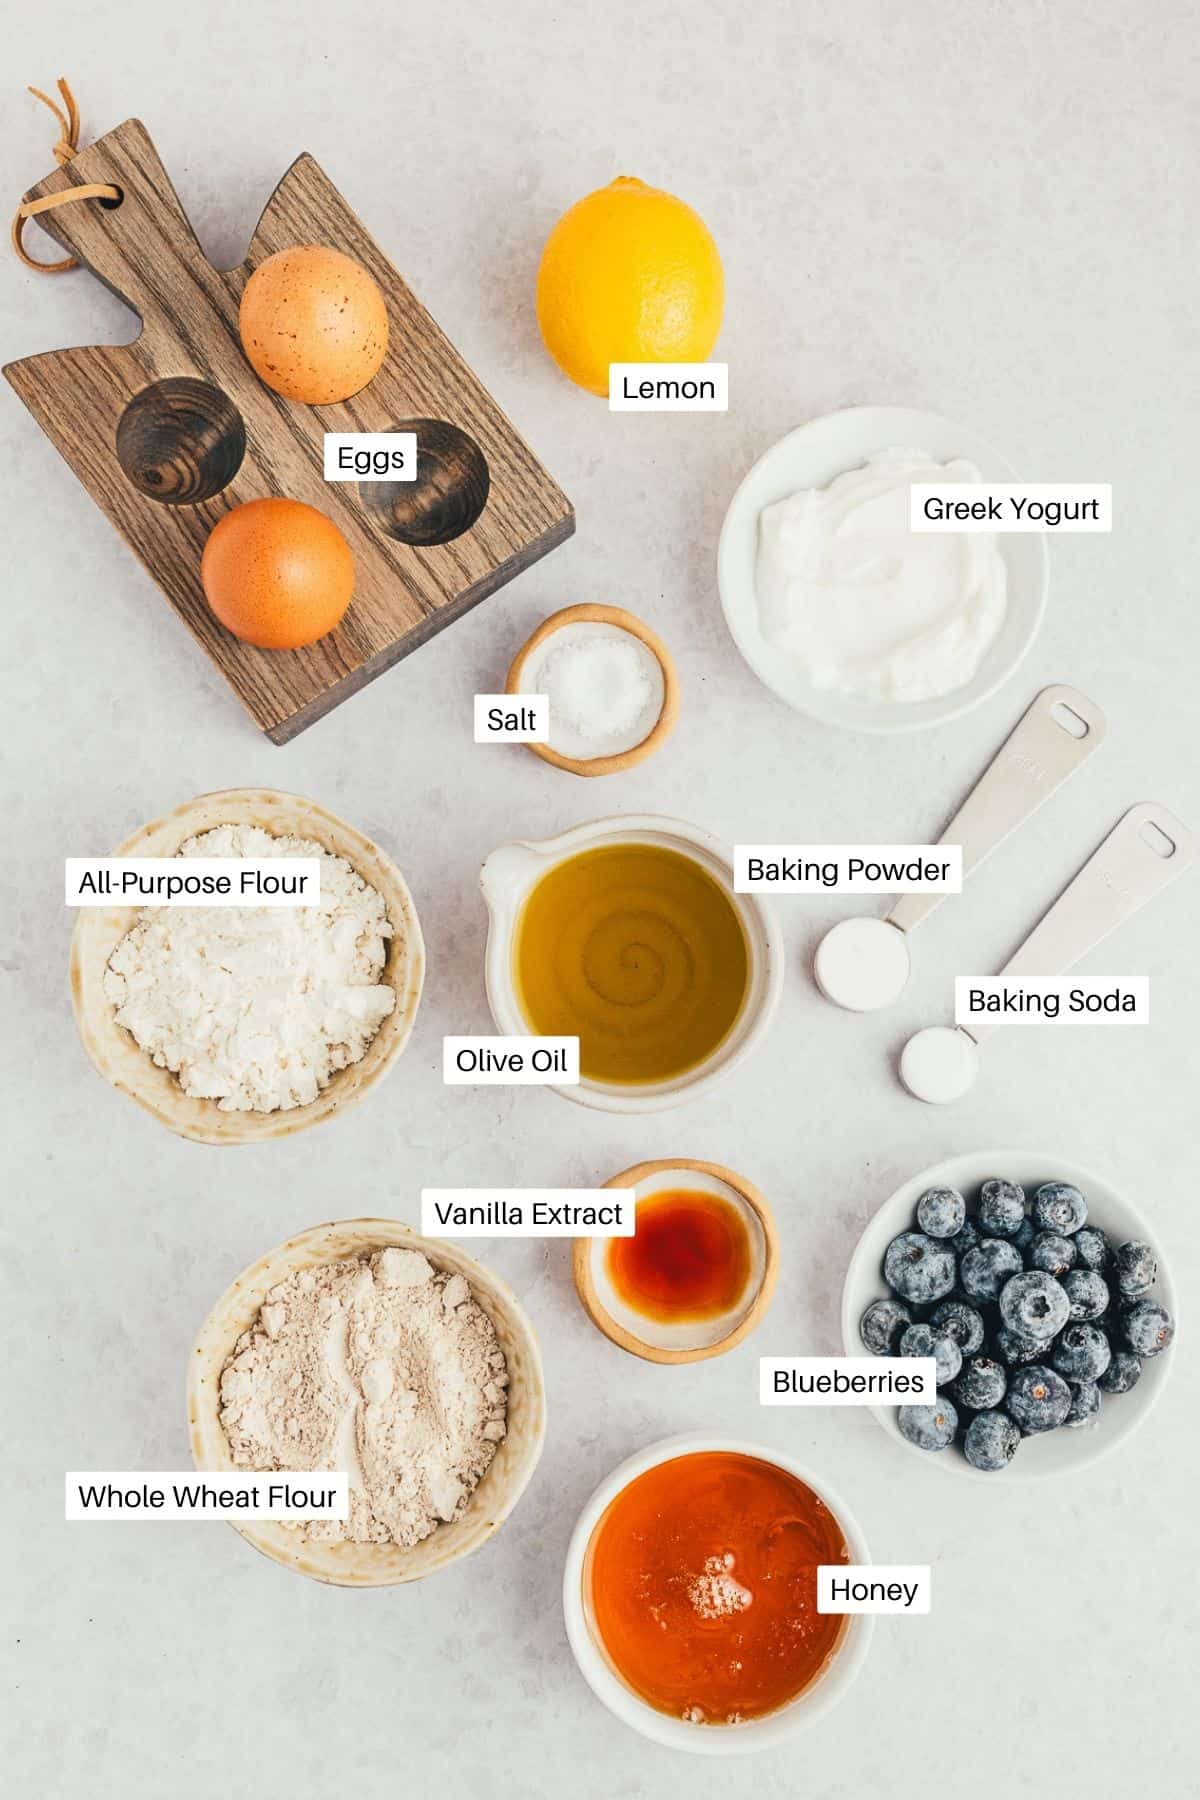 Lemon, eggs, greek yogurt, oil, flours, vanilla, blueberries and honey for the muffins. 